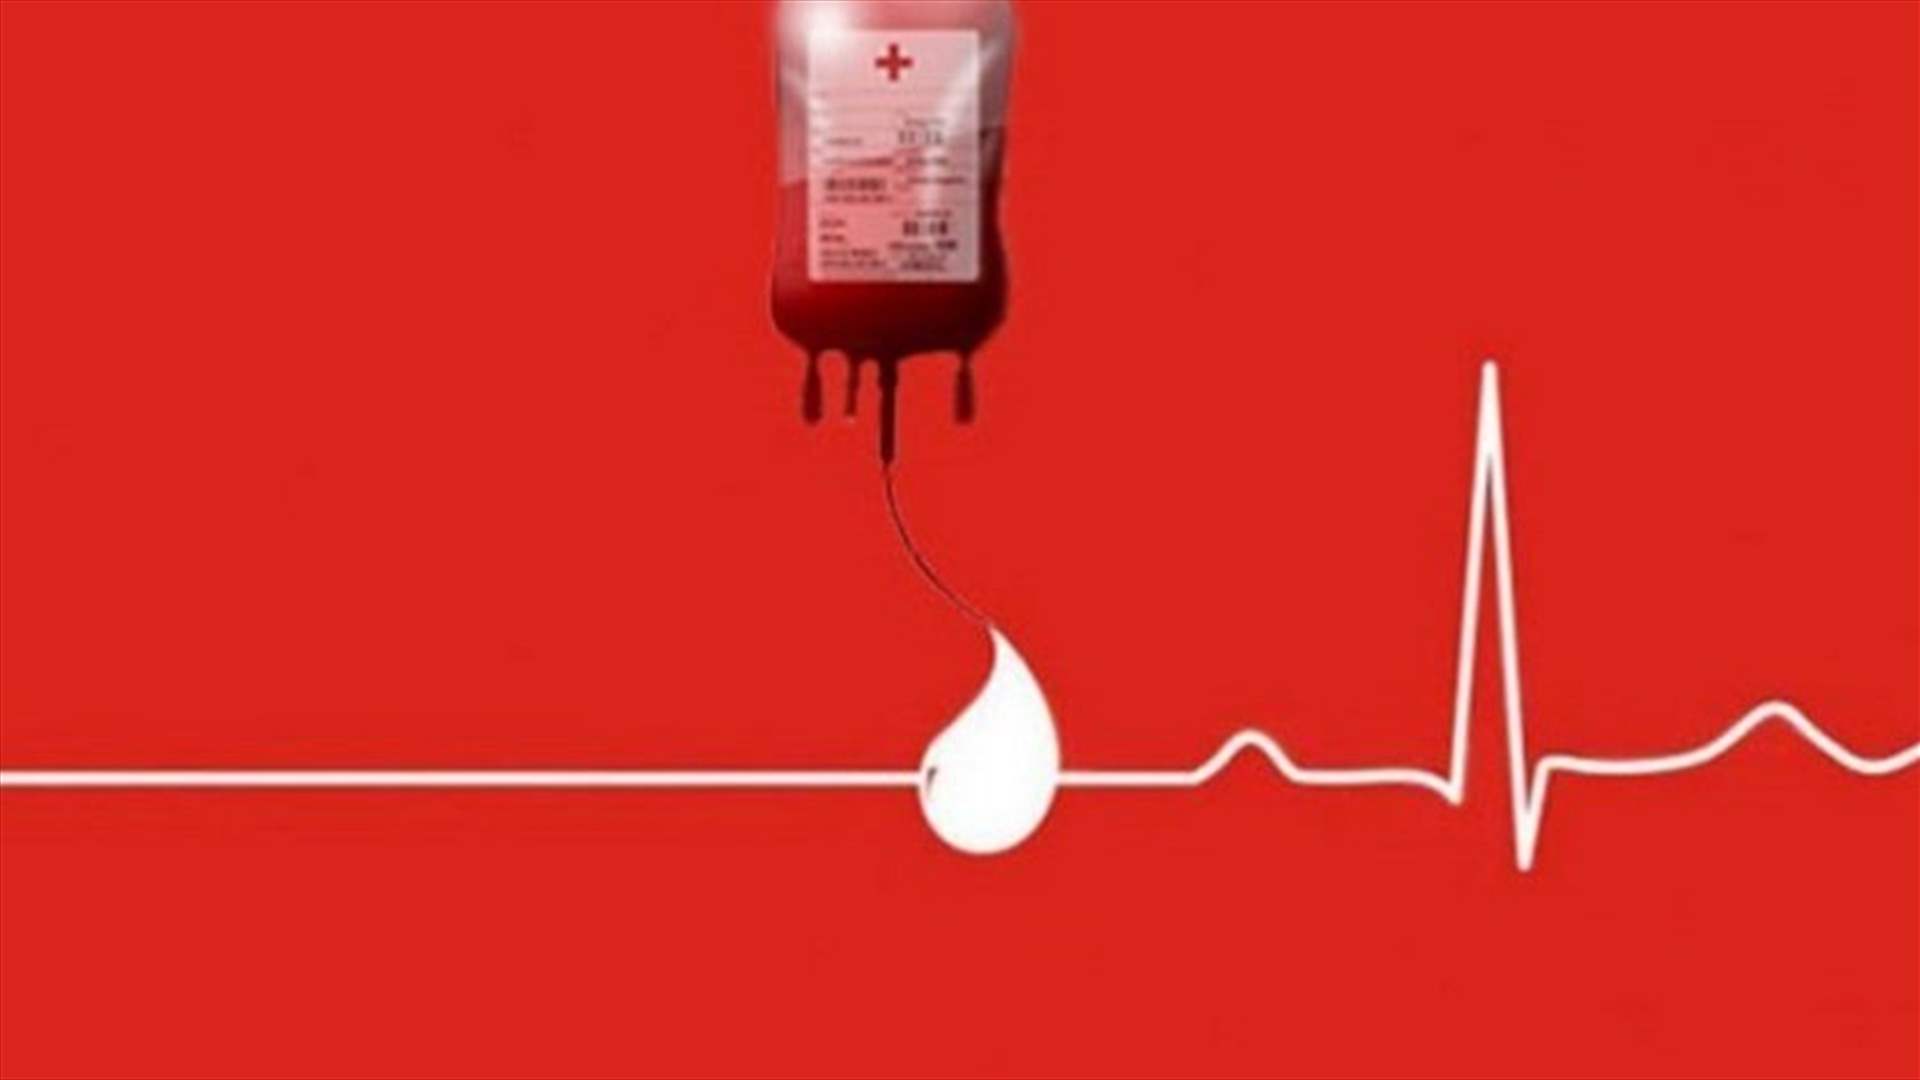 مريض في مستشفى الحايك بحاجة ماسة إلى 3 وحدات دم من فئة A+... للتبرع للاتصال على الرقم التالي: 76551557